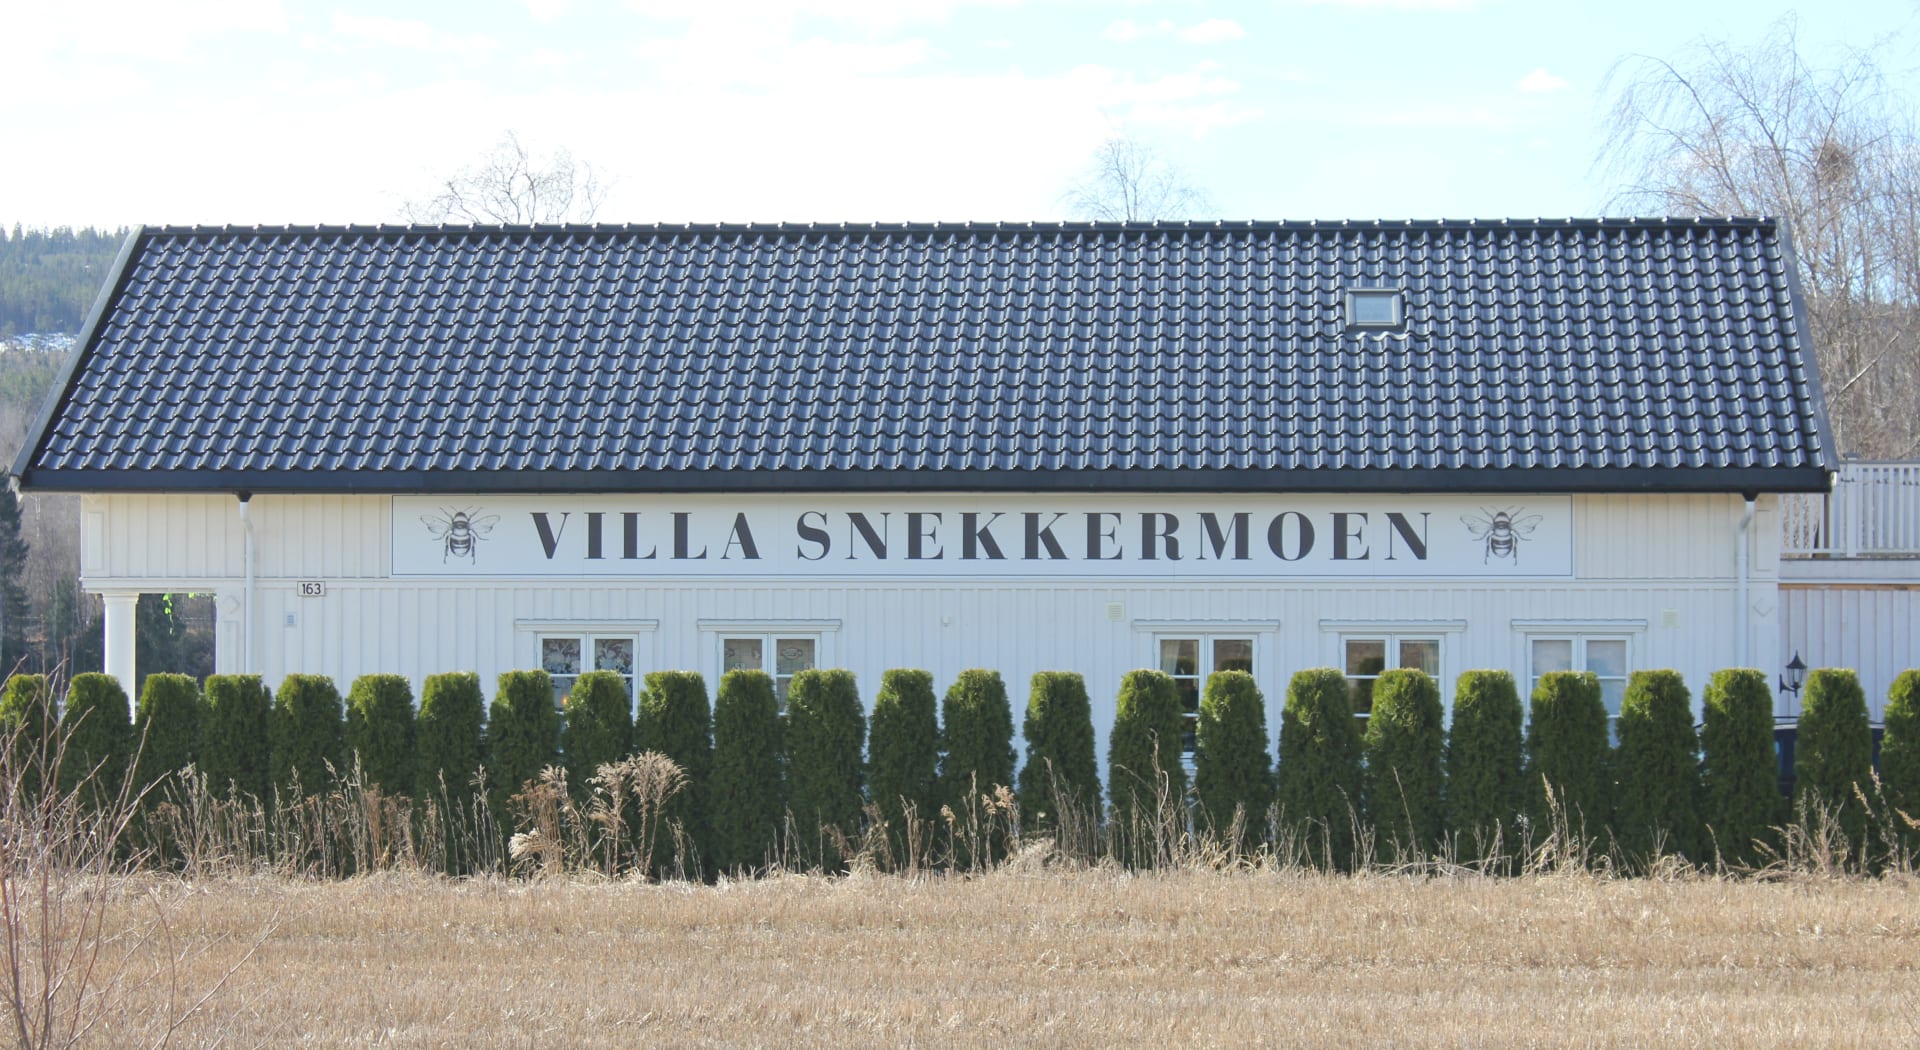 Featured image for “Villa Snekkermoen”